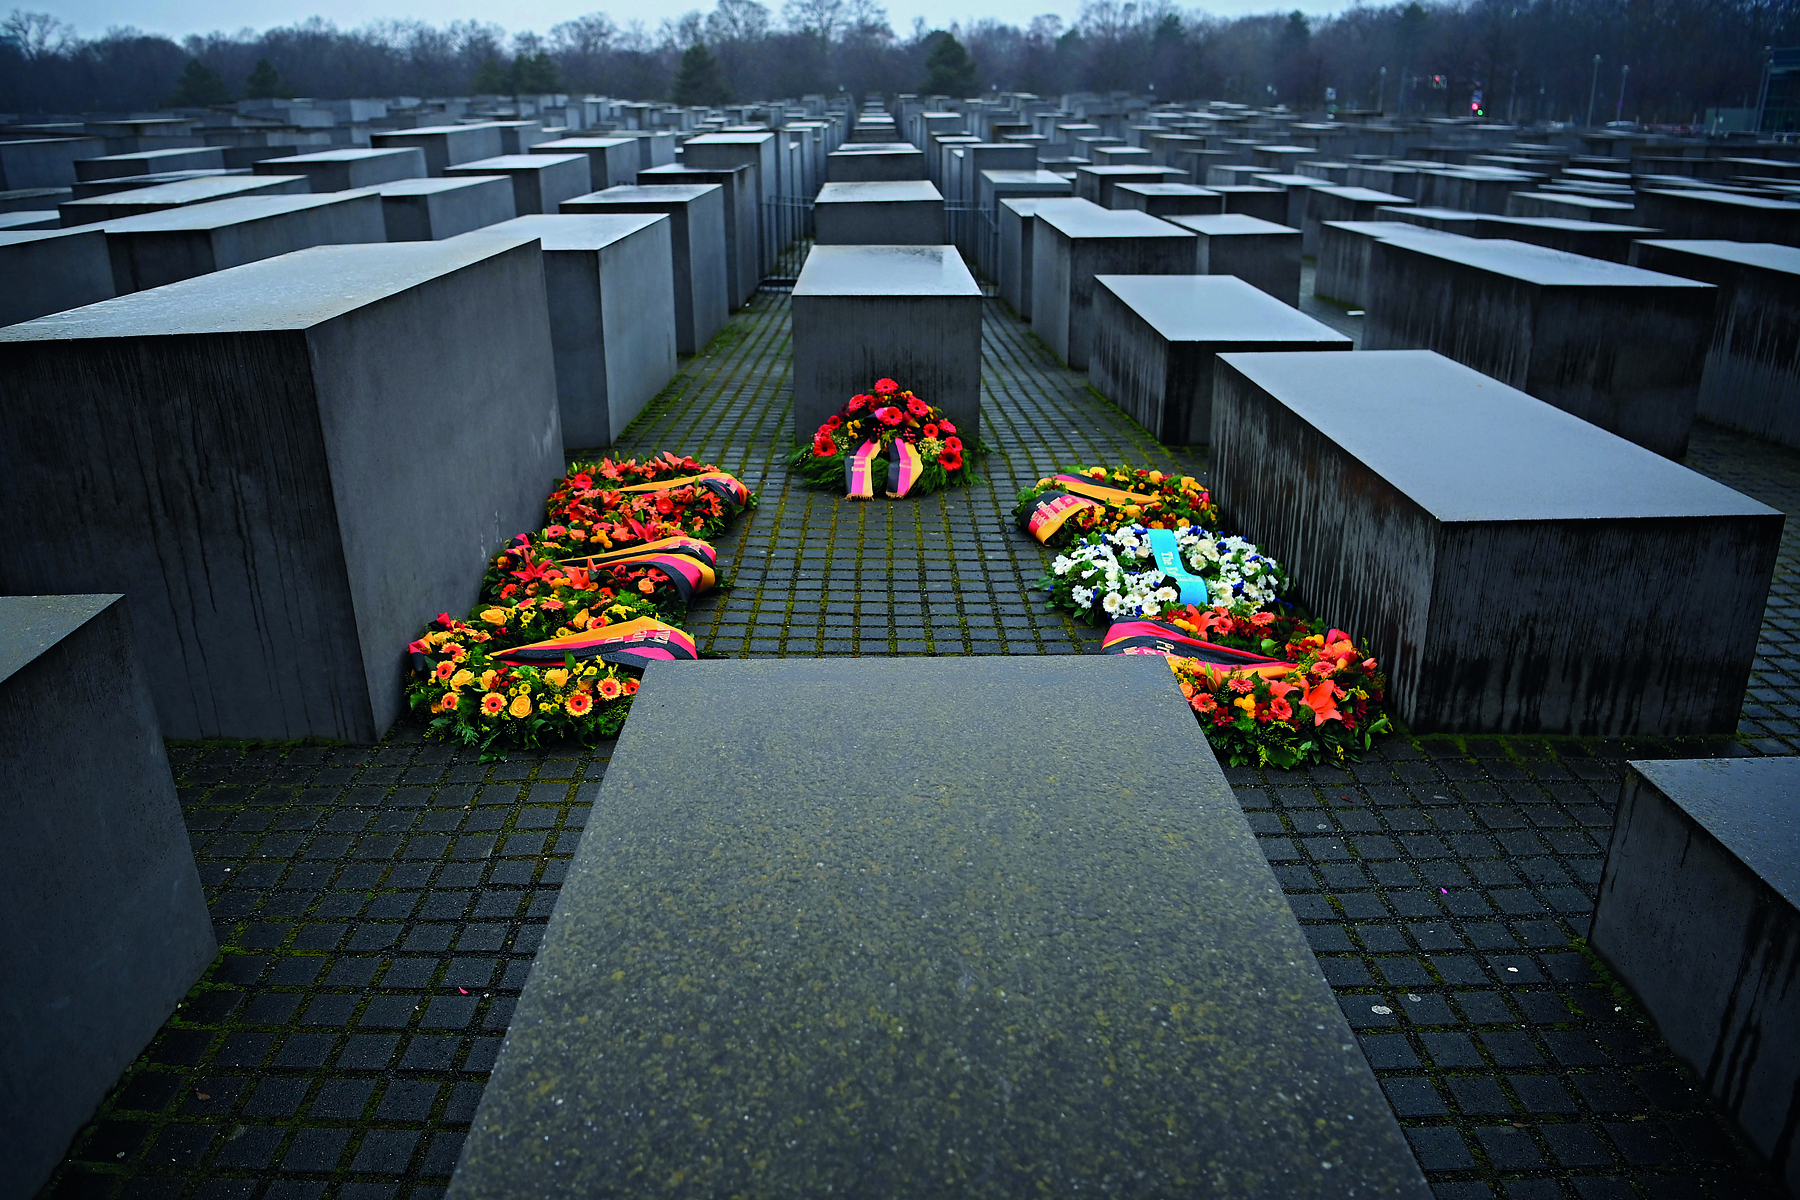 Fotografia. Vista de um memorial com diversos monumentos escuros, retangulares, de diferentes alturas, e ao centro, várias coroas de flores coloridas.